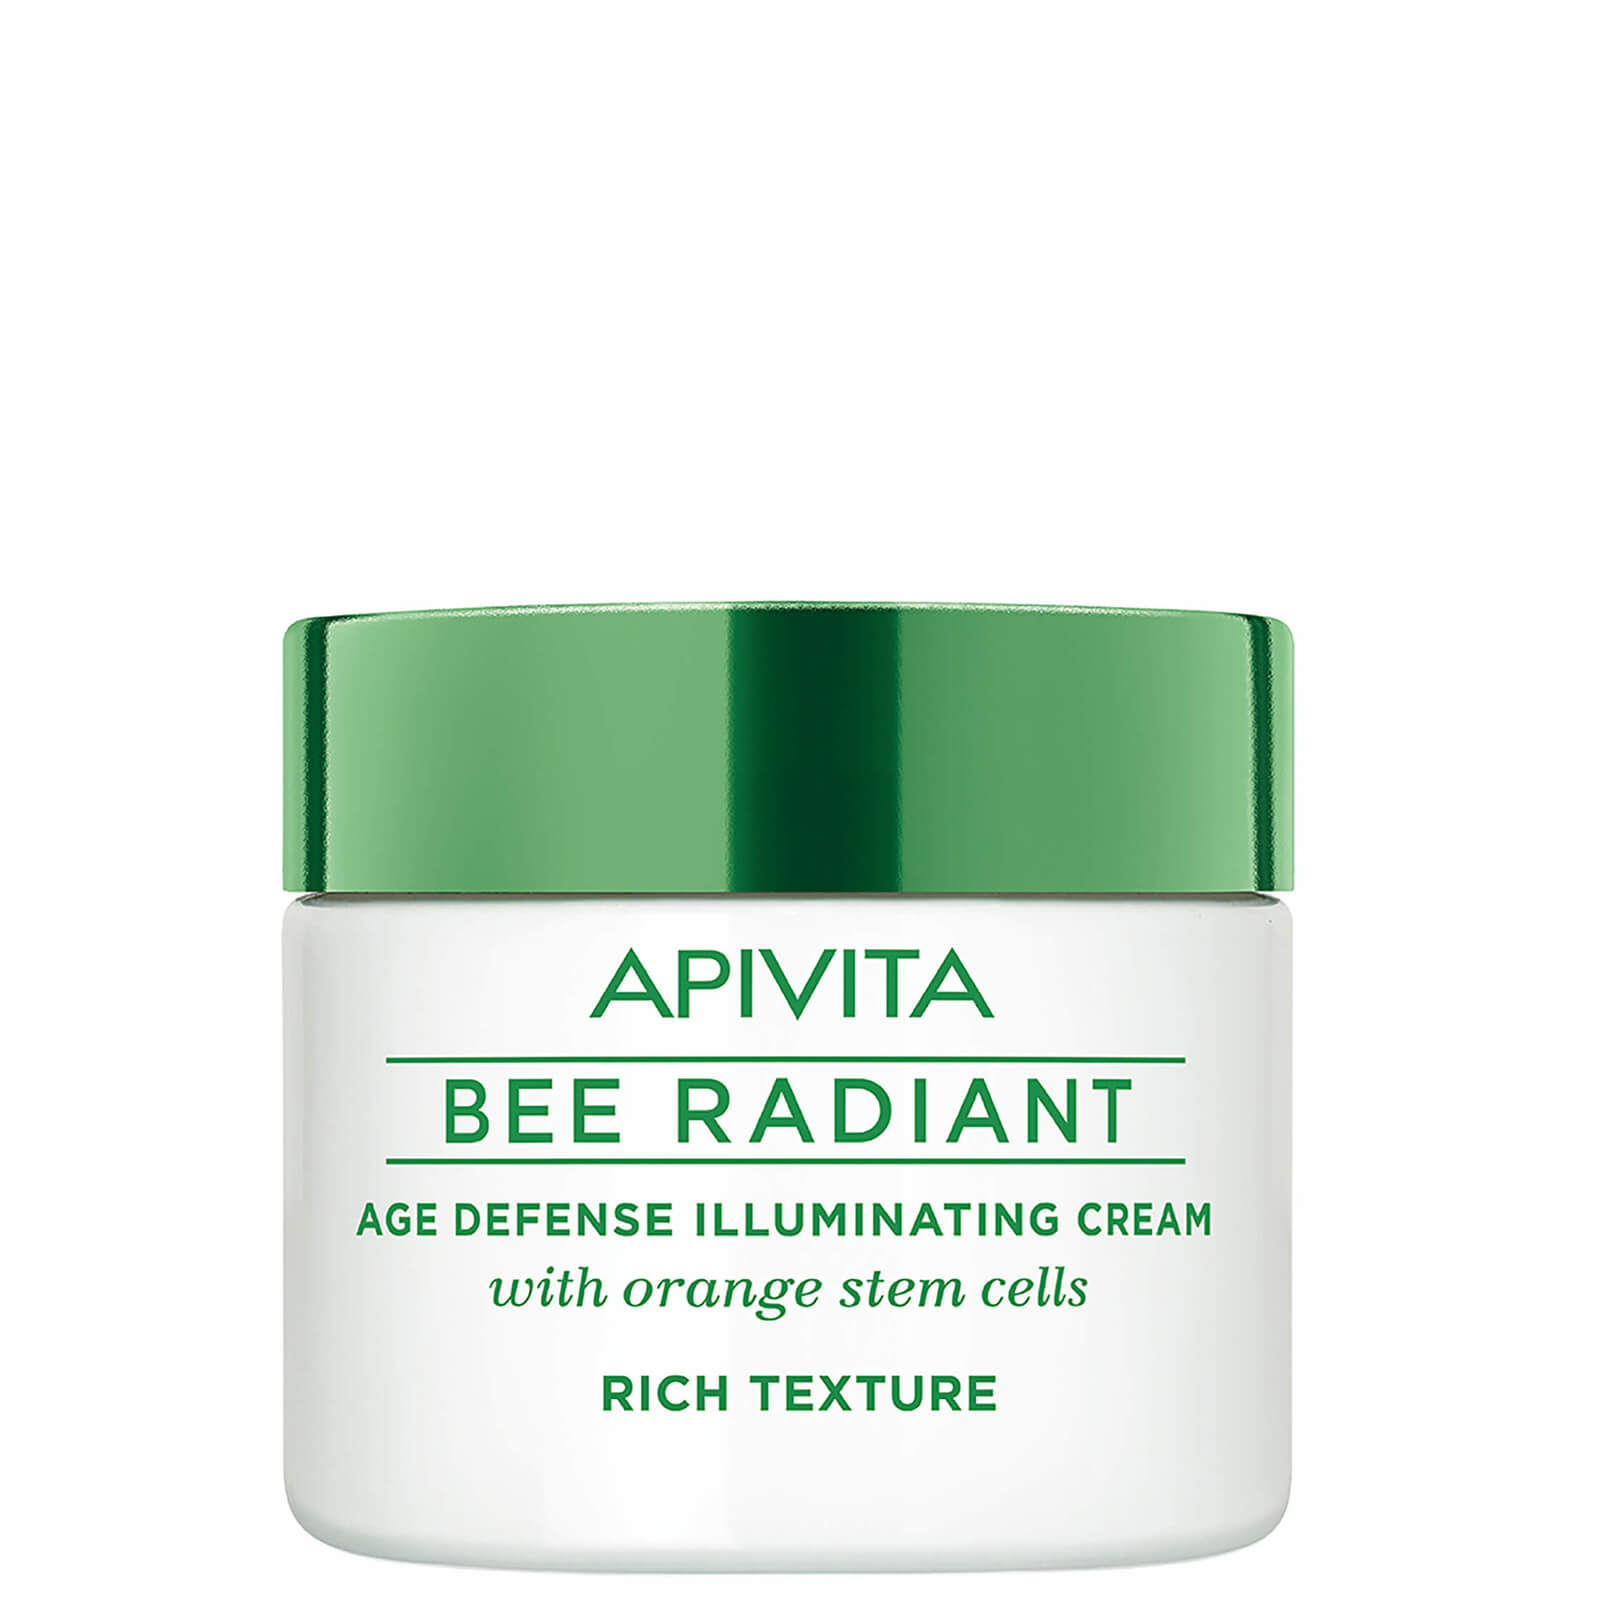 Crema iluminadora antienvejecimiento Bee Radiant de APIVITA - Textura enriquecida 50 ml